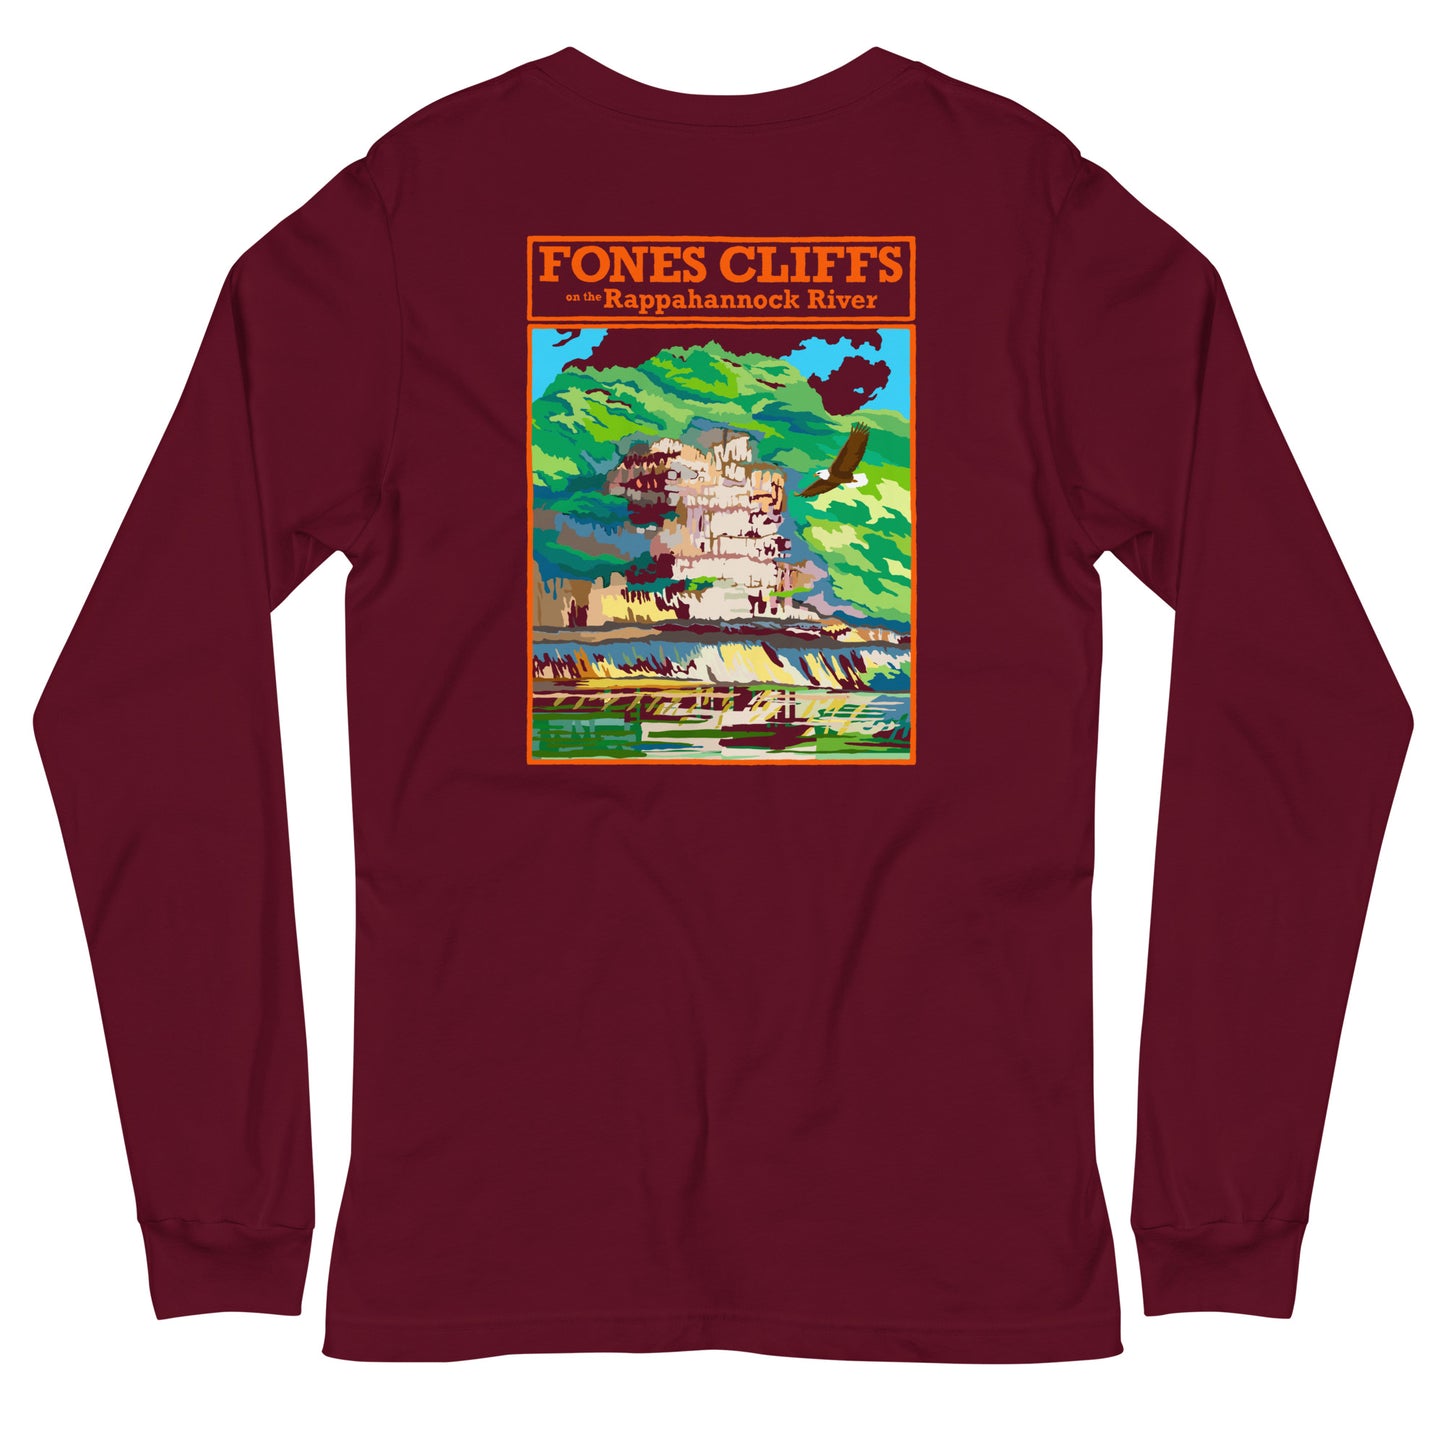 Fones Cliffs - Unisex Long Sleeve Shirt